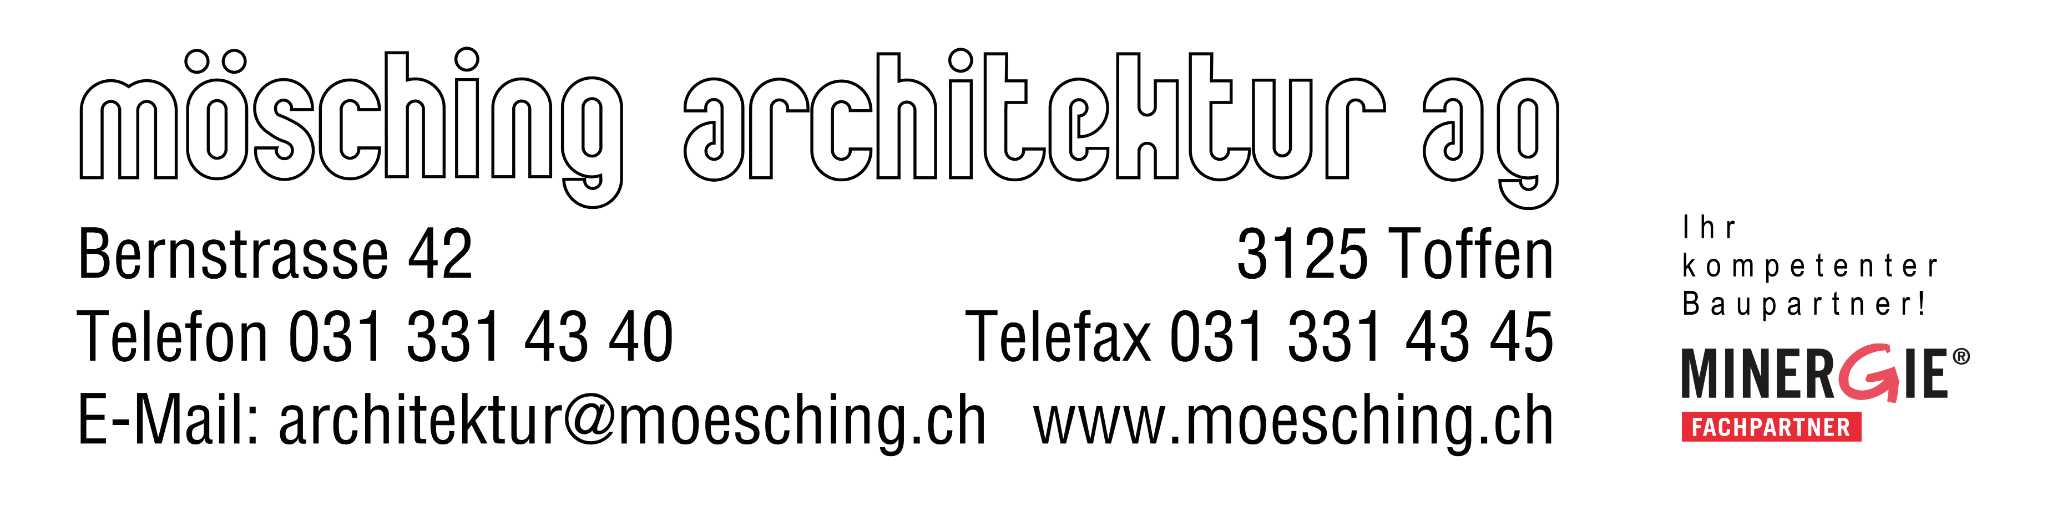 Mösching Architektur AG